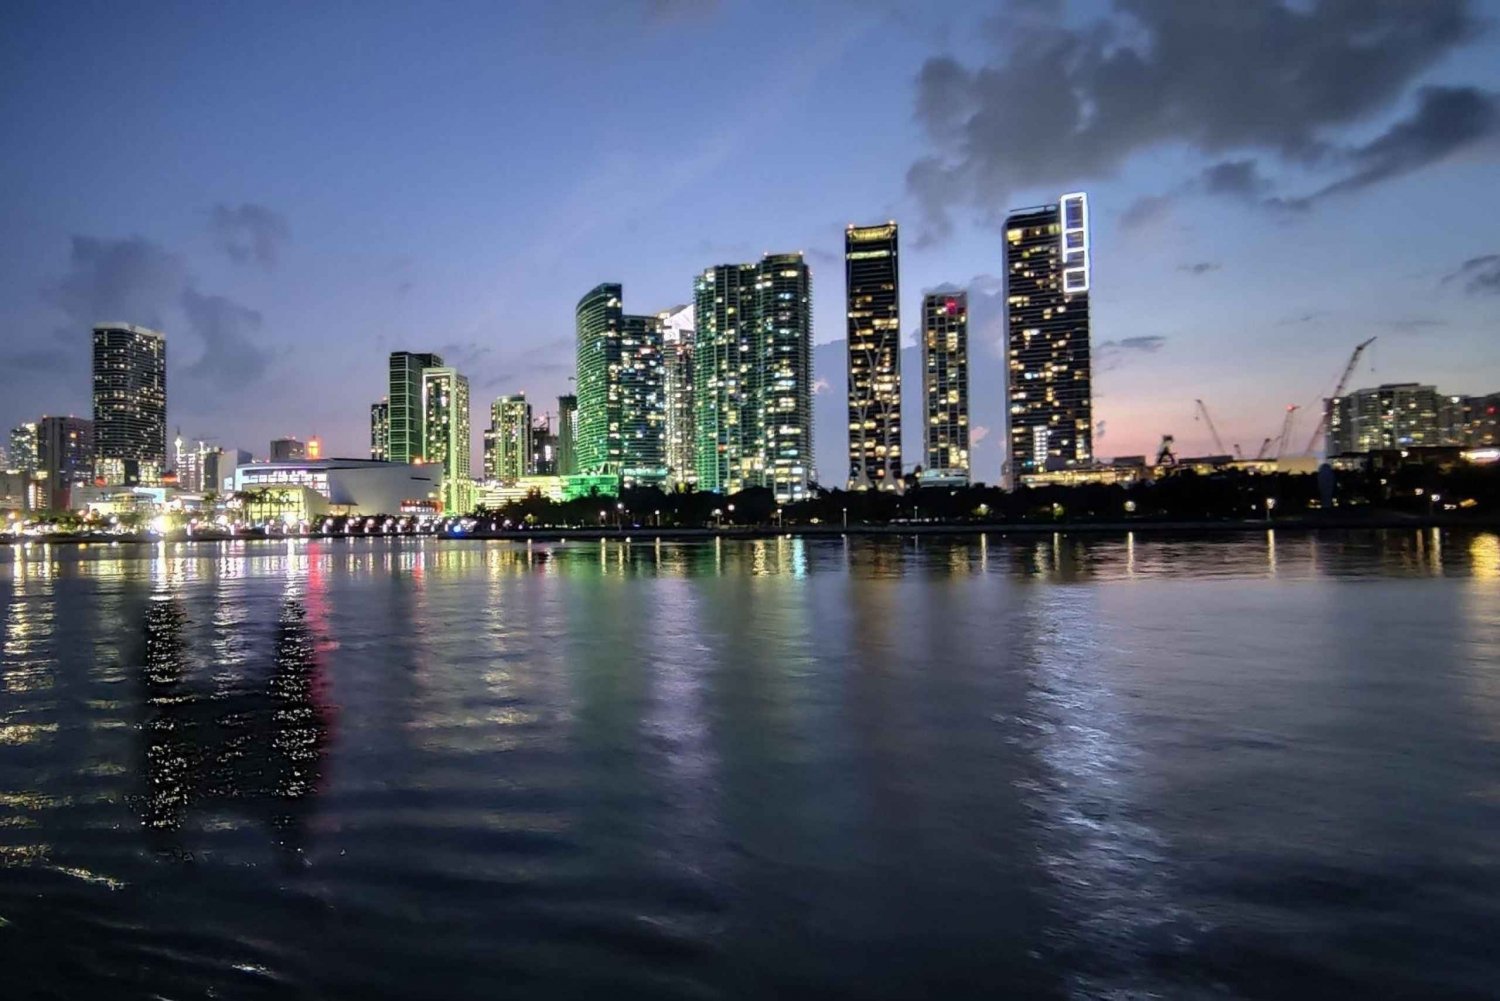 Miami : Croisière nocturne guidée sur la baie de Biscayne